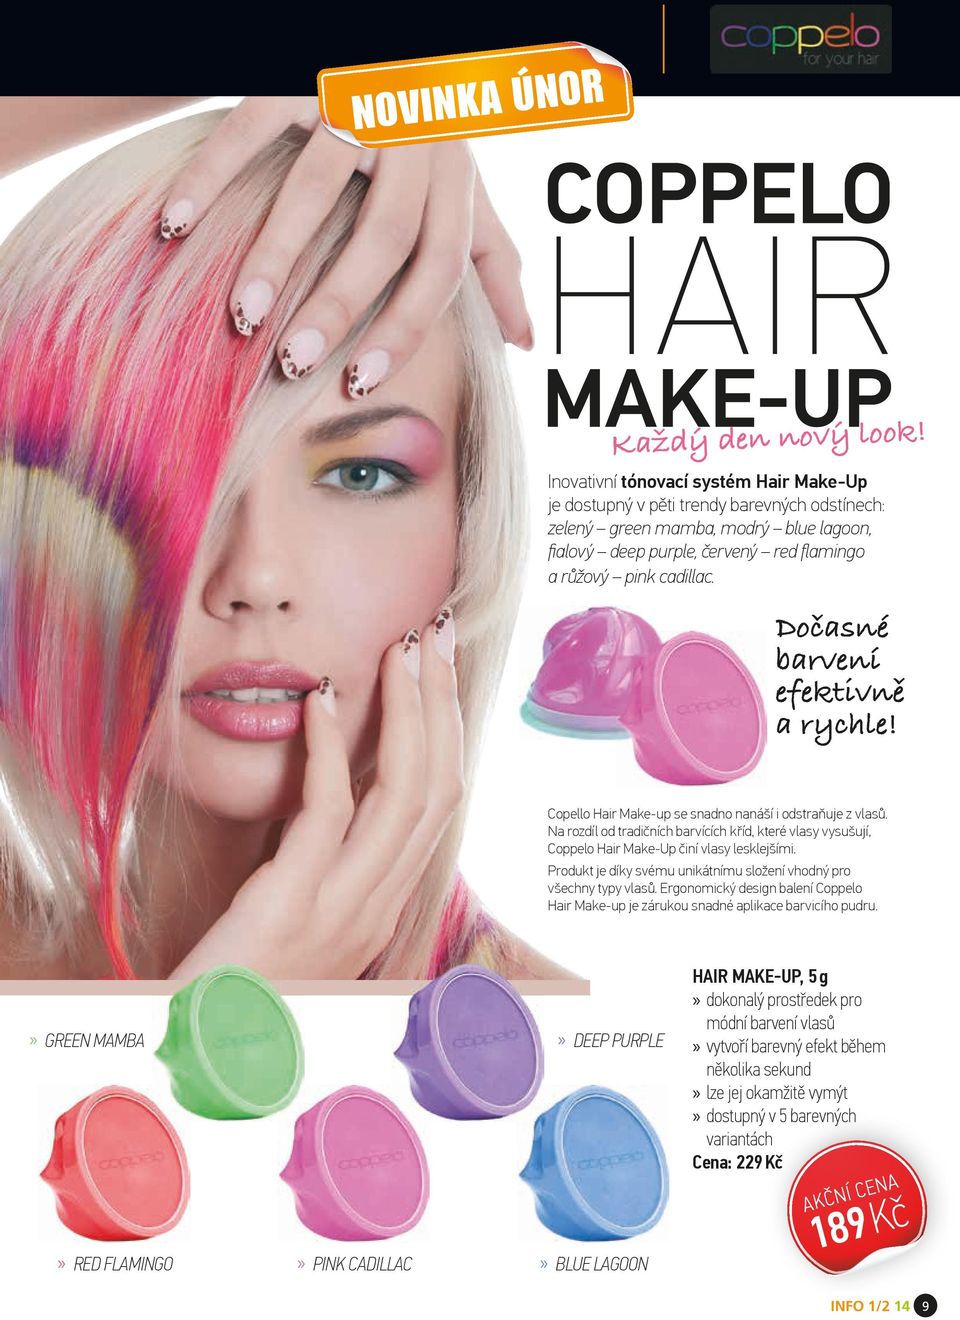 Dočasné barvení efektivně a rychle! Copello Hair Make-up se snadno nanáší i odstraňuje z vlasů.